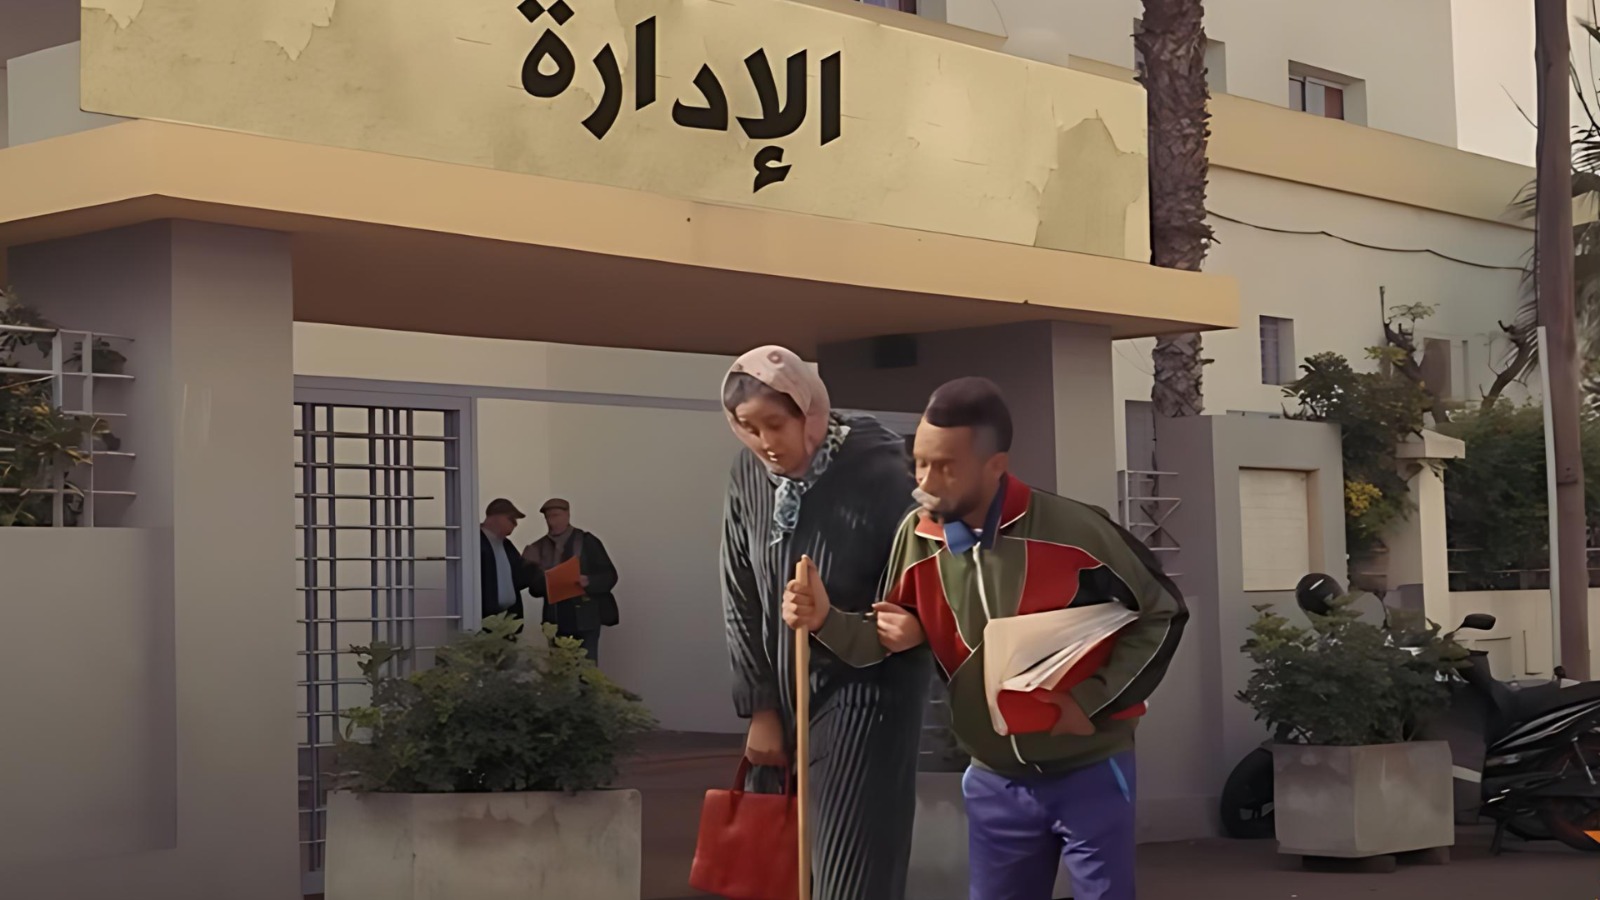 هل التلفزيون المغربي تصالح مع “المحرمات” والمواضيع المسكوت عنها؟